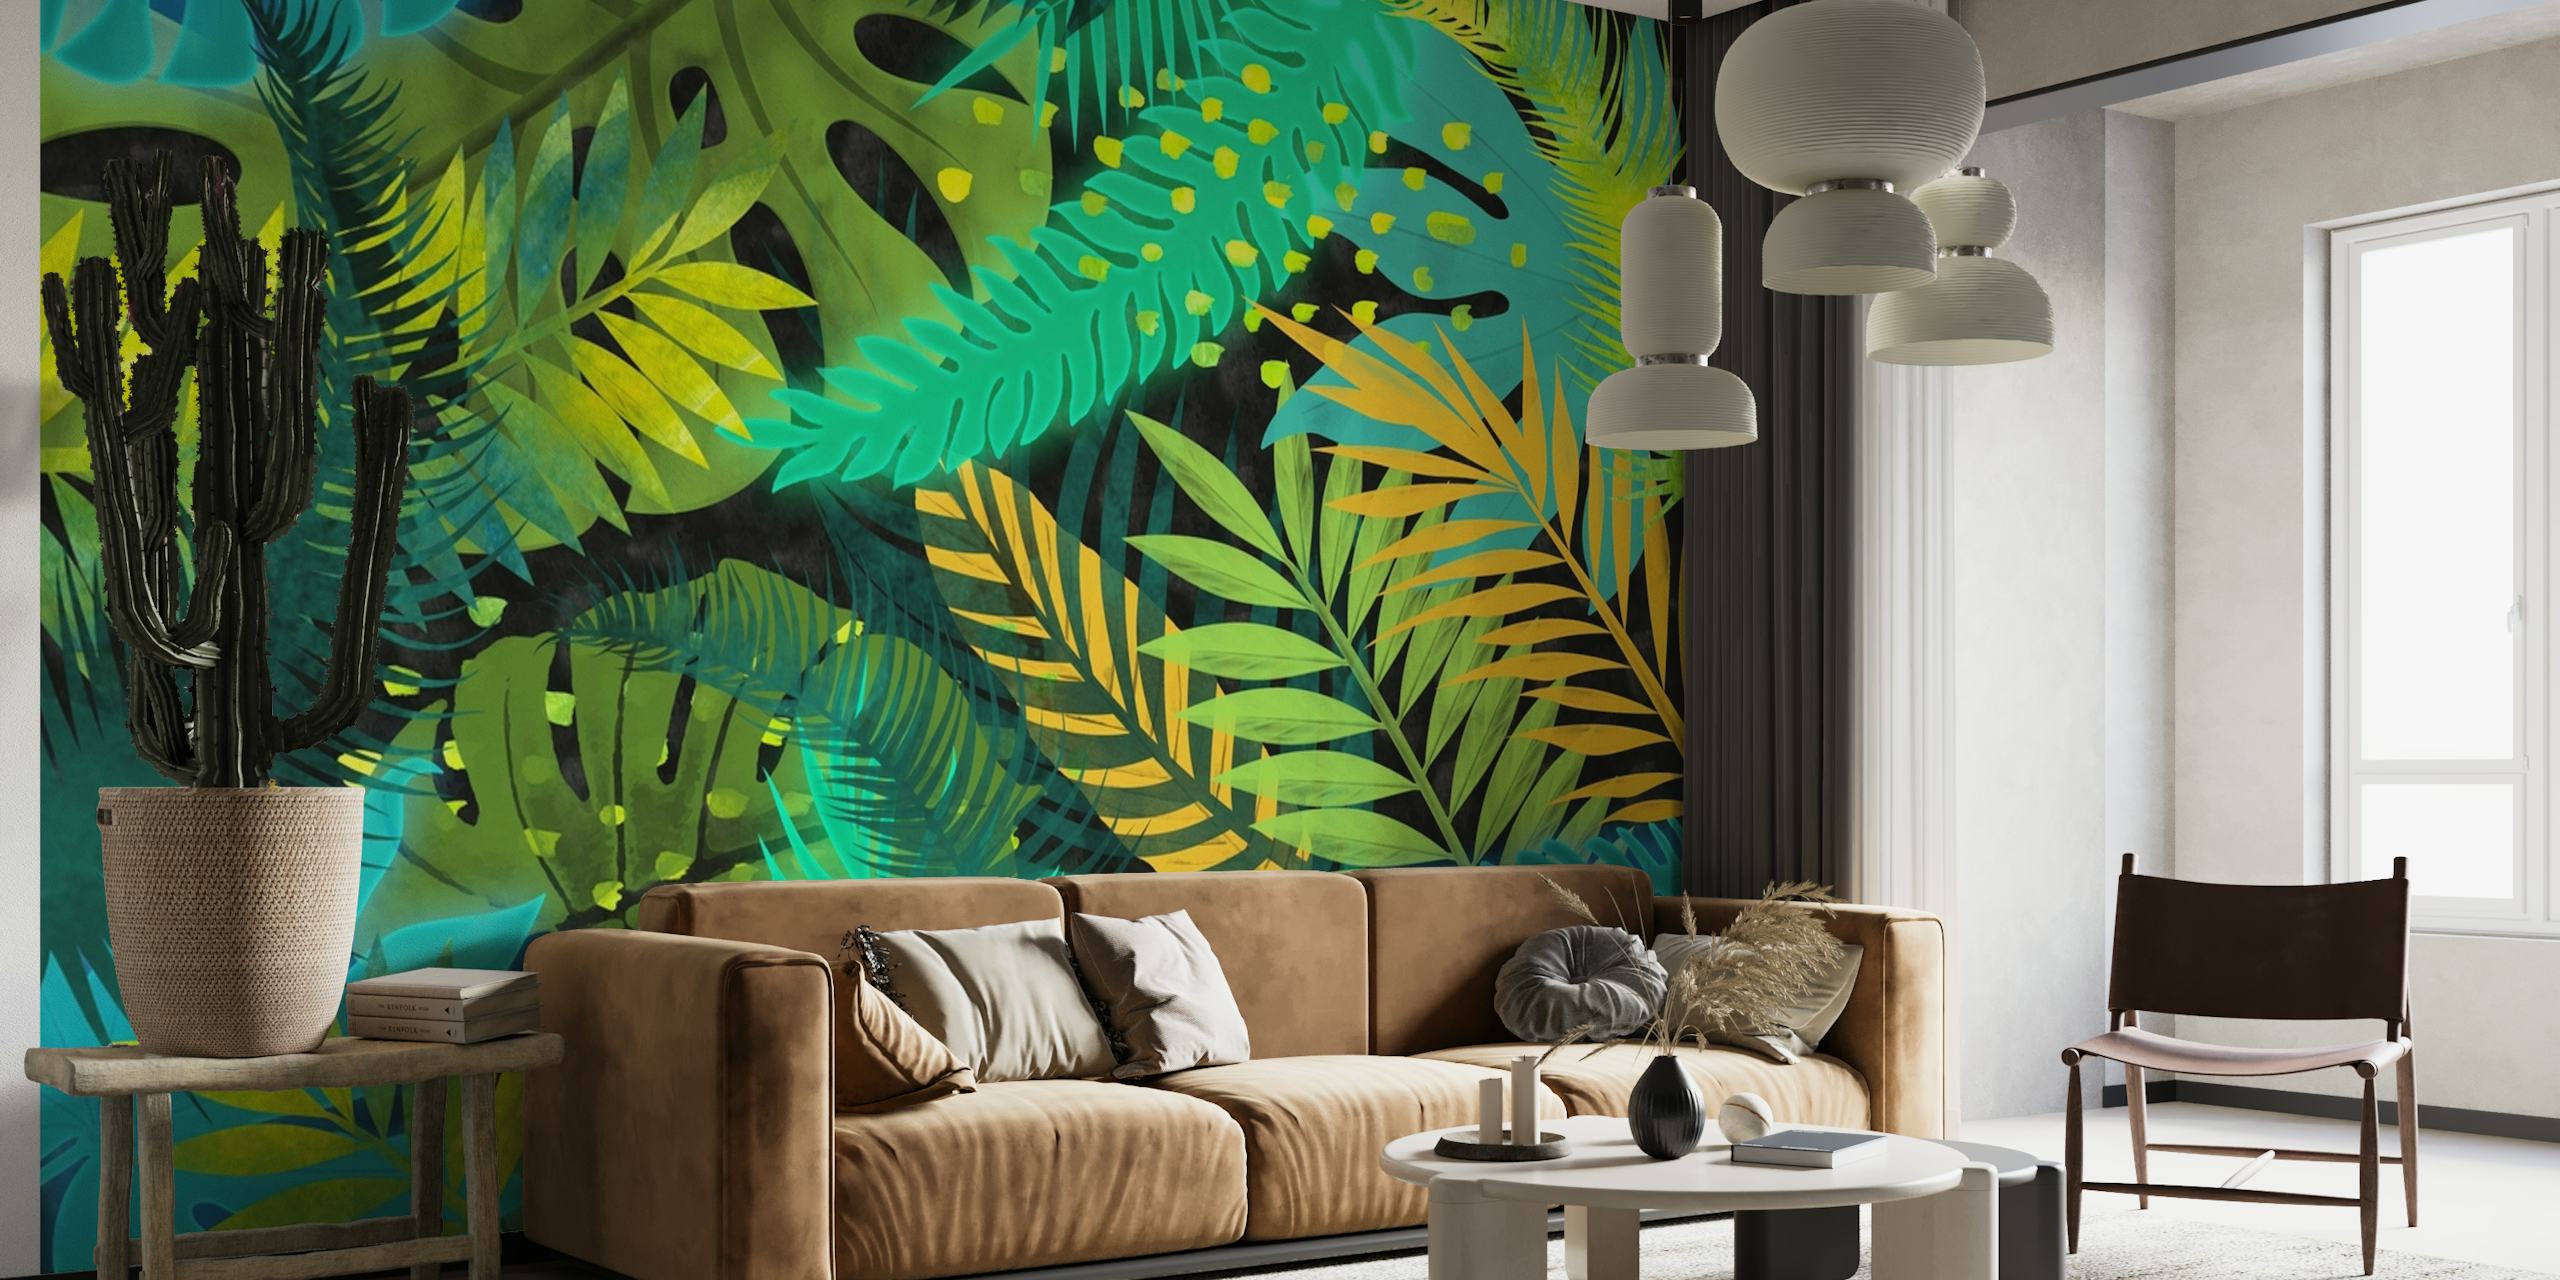 Fotomural de follaje tropical con hojas azules, verdes y amarillas para decoración de interiores